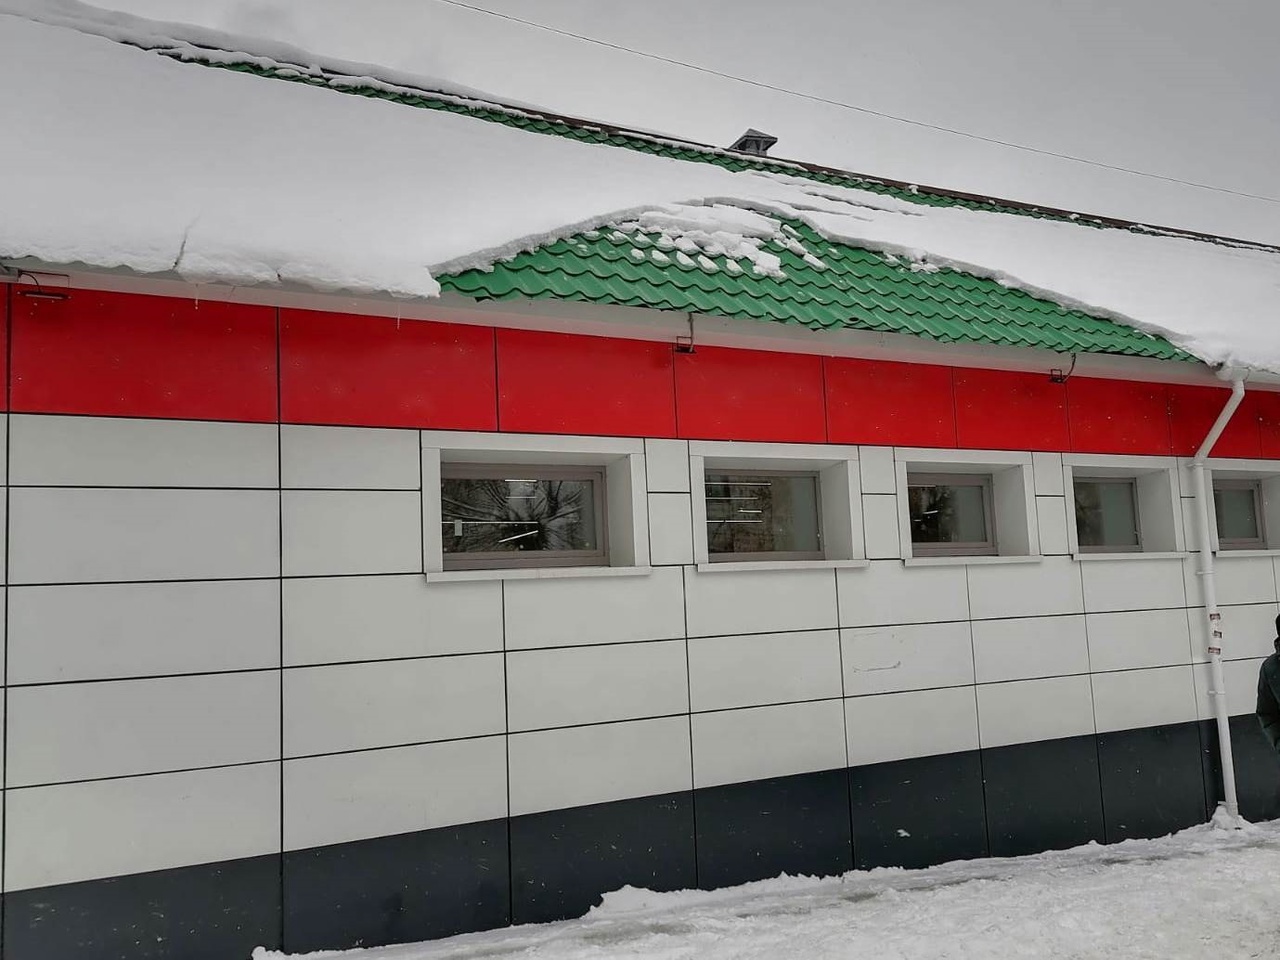  В Кирове на коляску с двухмесячным ребенком упала снежная глыба с крыши